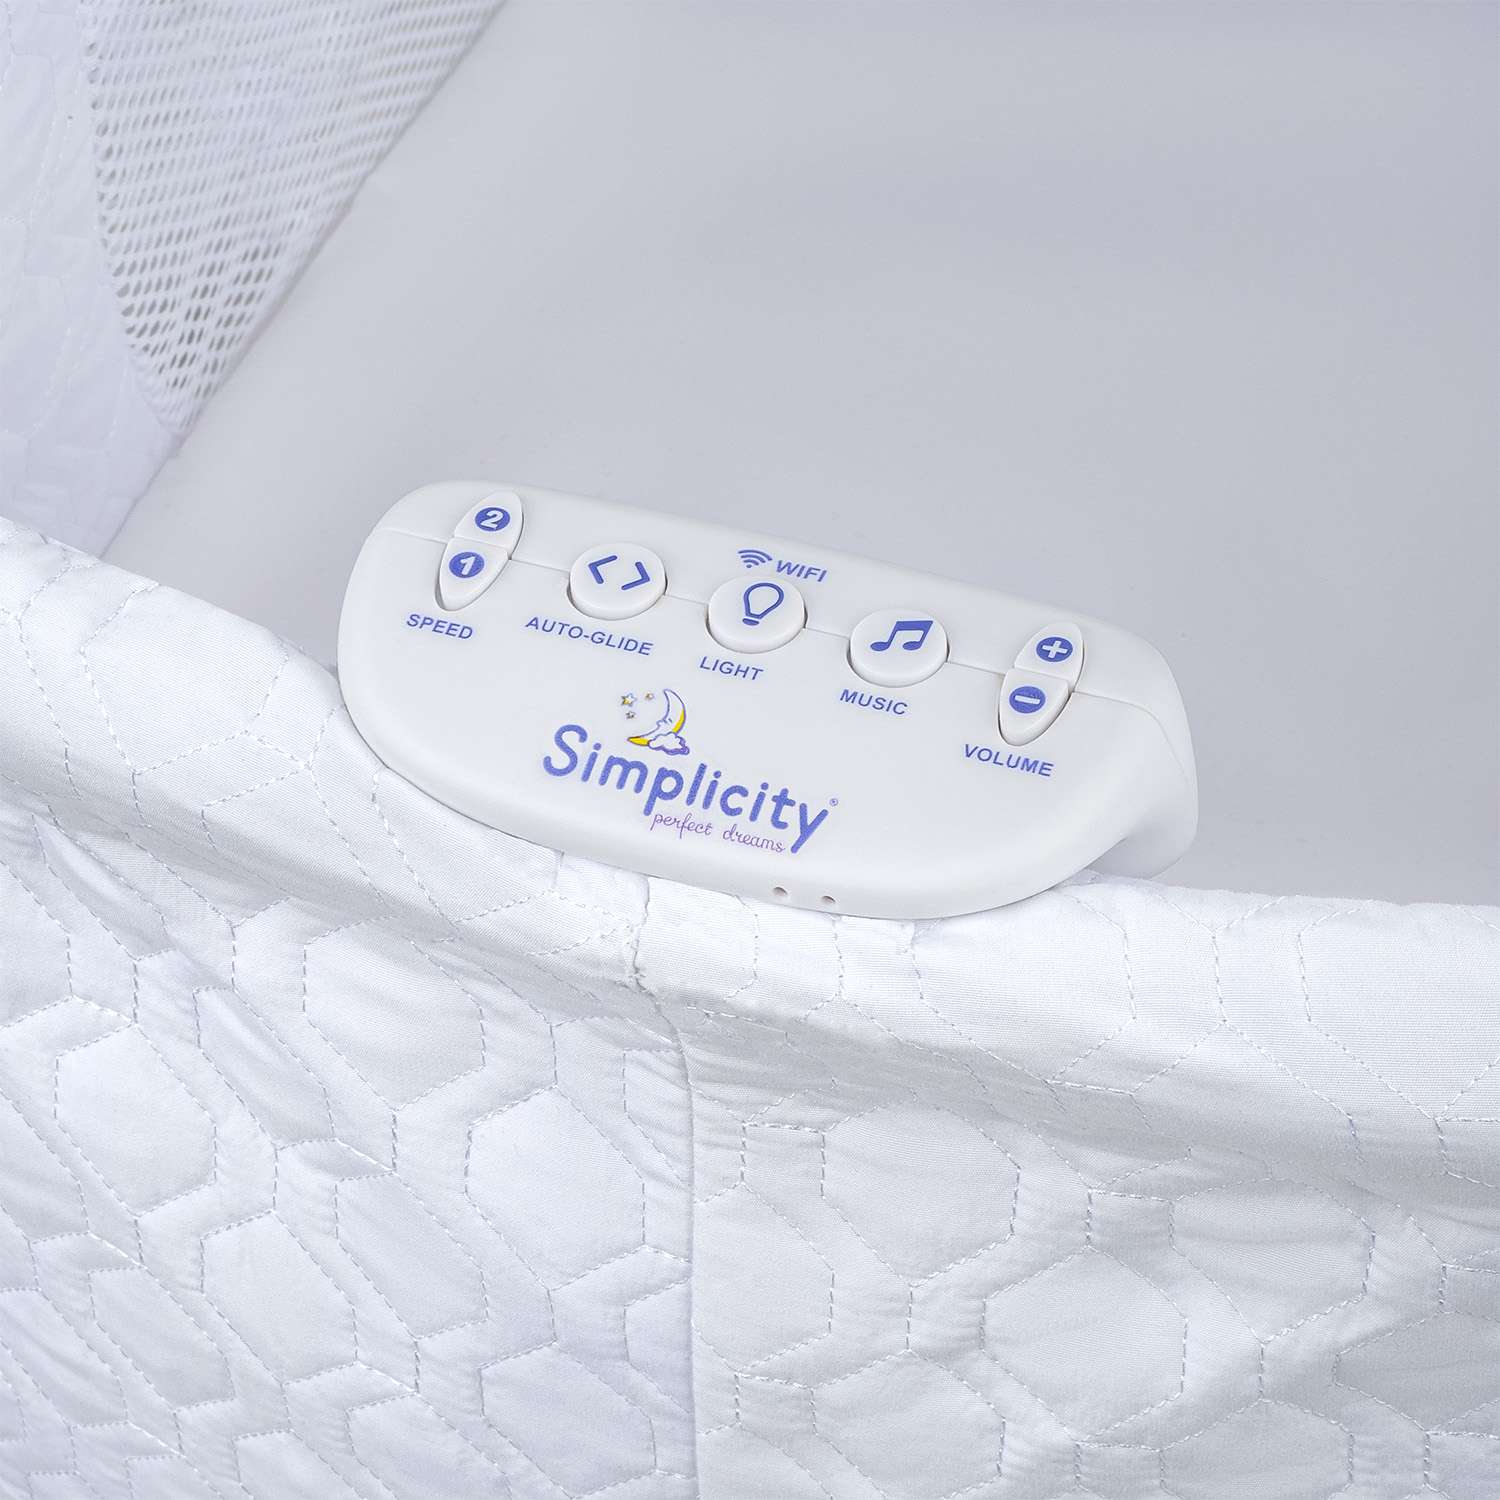 Колыбель-кроватка Simplicity GL4090 Elite romby white - фото 17